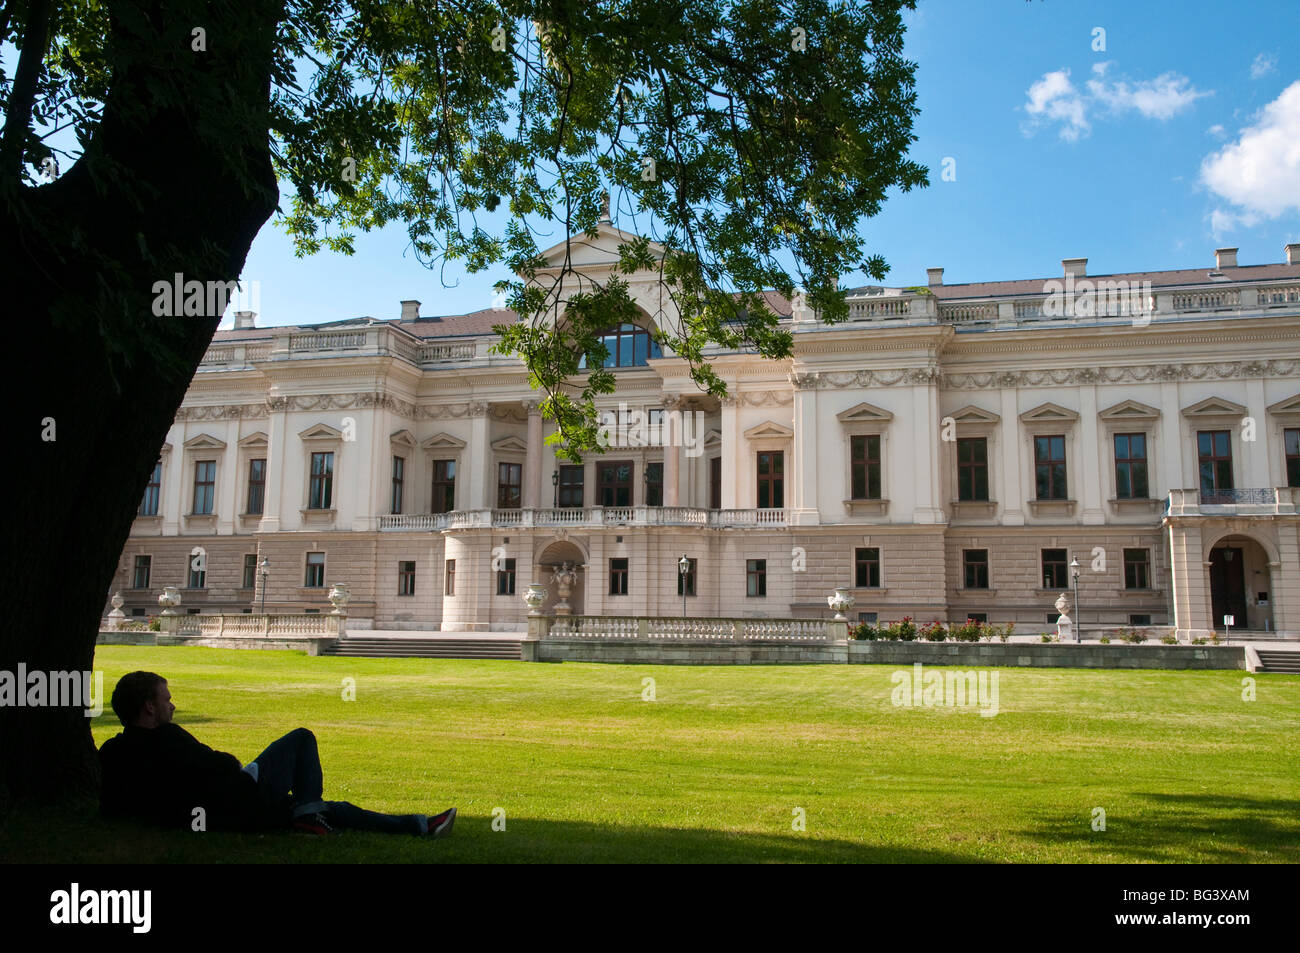 Palais Liechtenstein, Wien Österreich | Palais Liechtenstein, Vienna, Austria Foto Stock